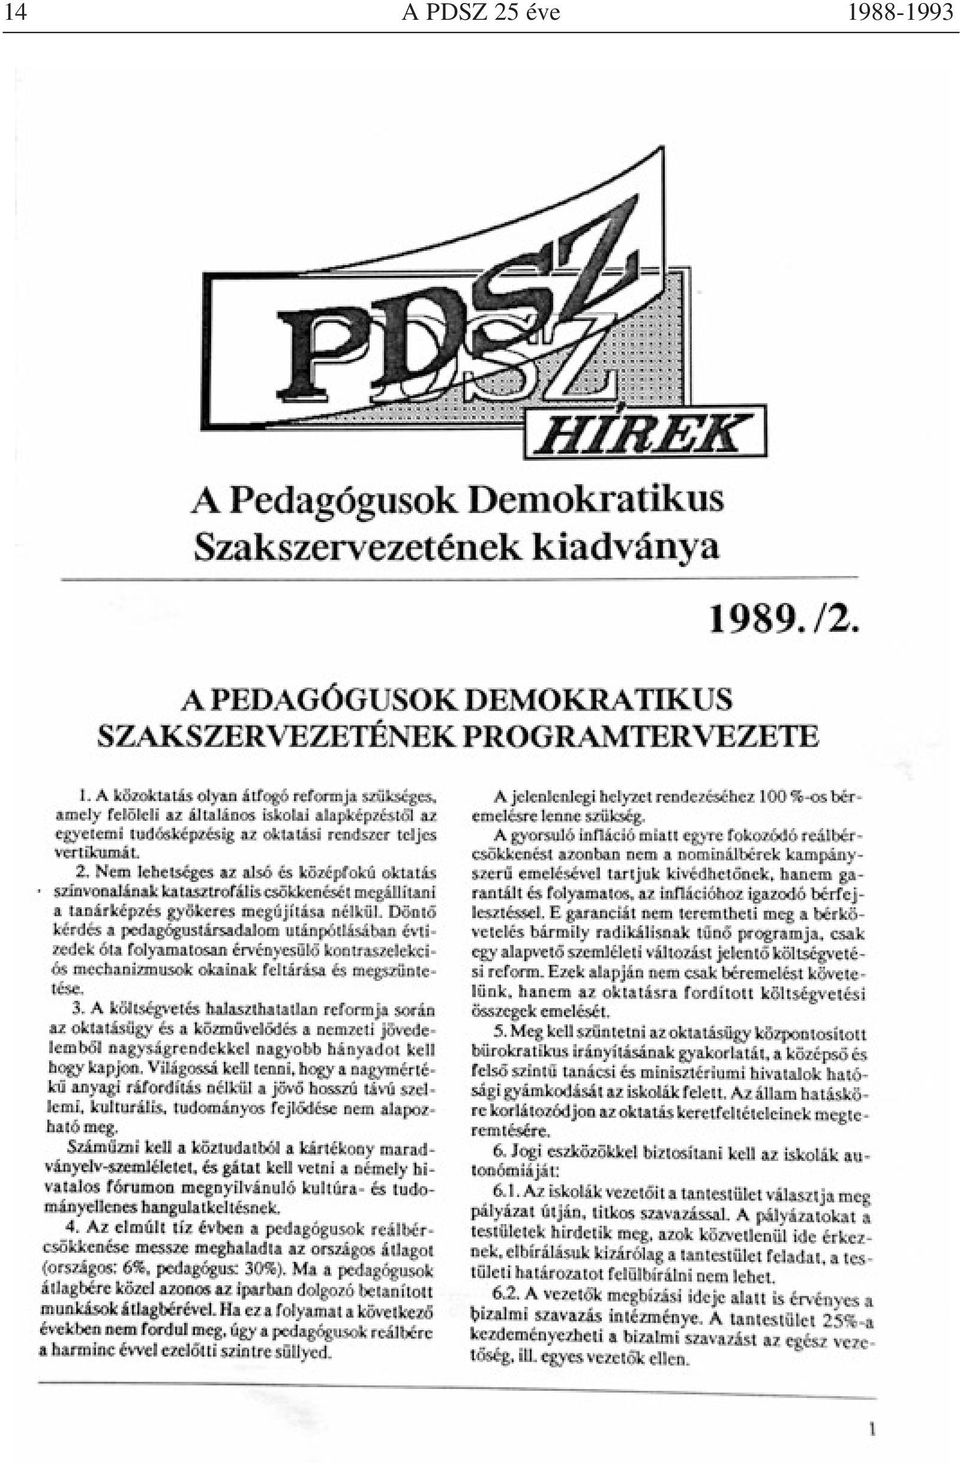 1988-1993